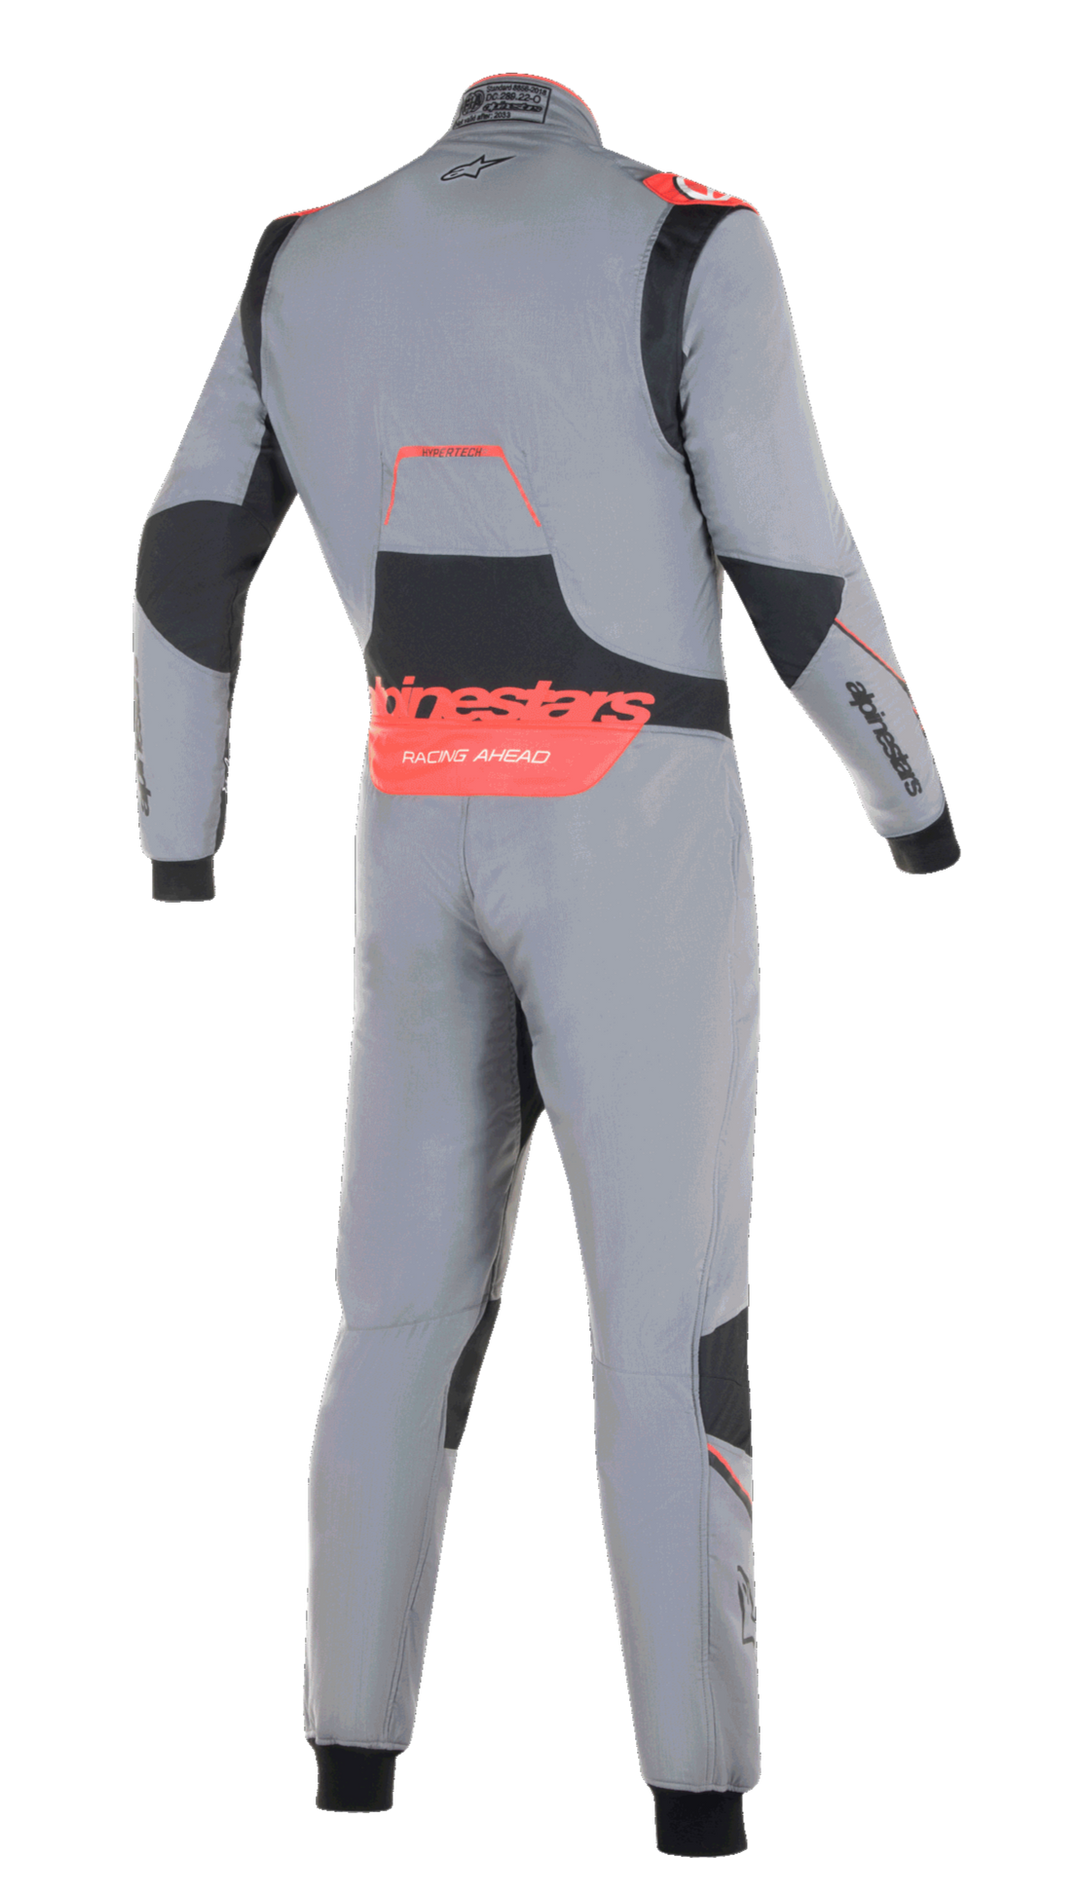 Hypertech V3 Suit